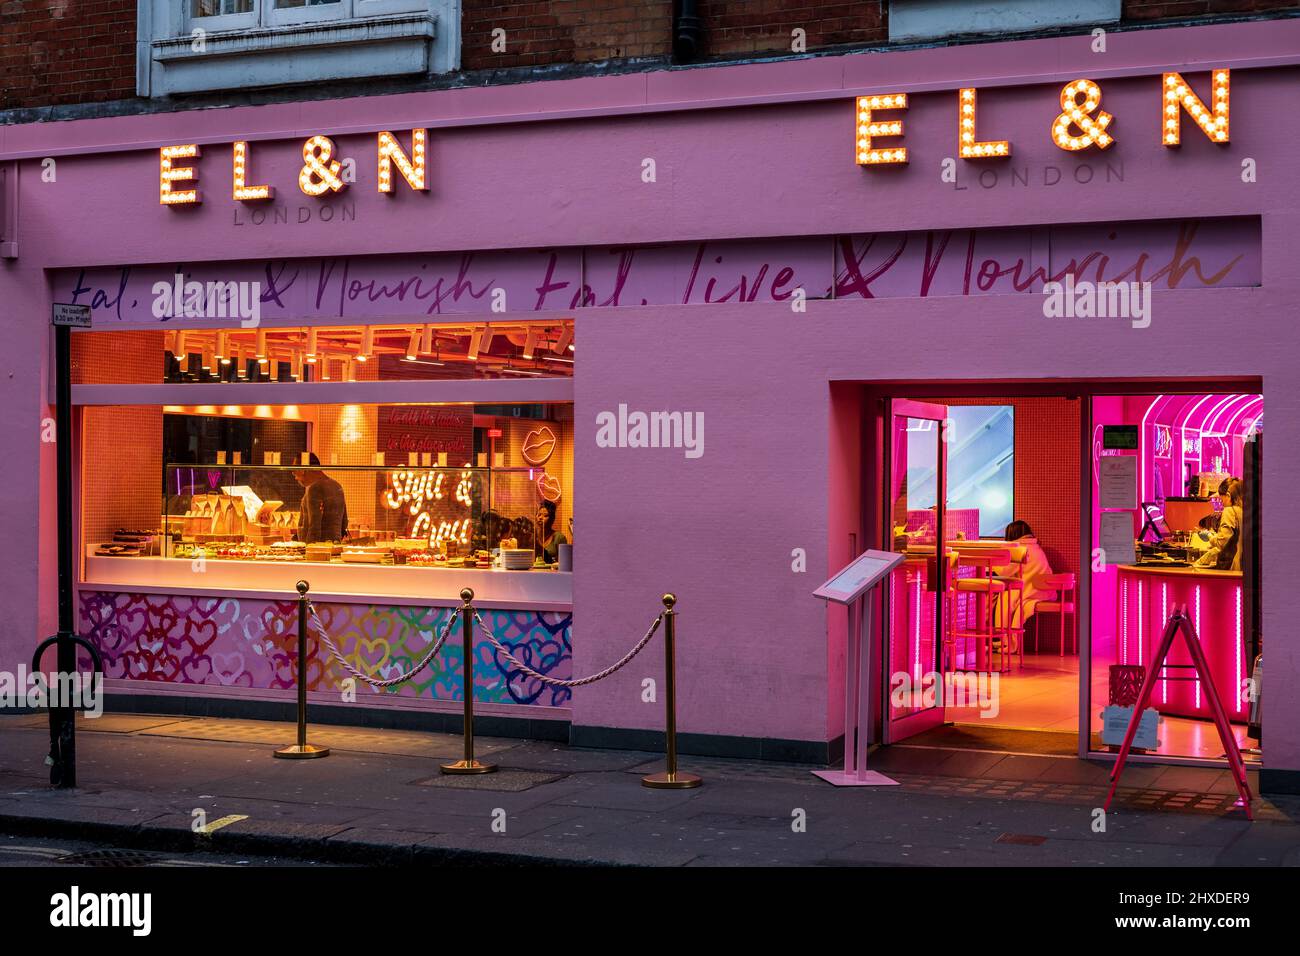 EL&N Soho London - descrivendosi come il principale marchio Instagramable Café and Lifestyle, la filiale rosa DI EL&N Wardour Street nel quartiere Soho di Londra. Foto Stock